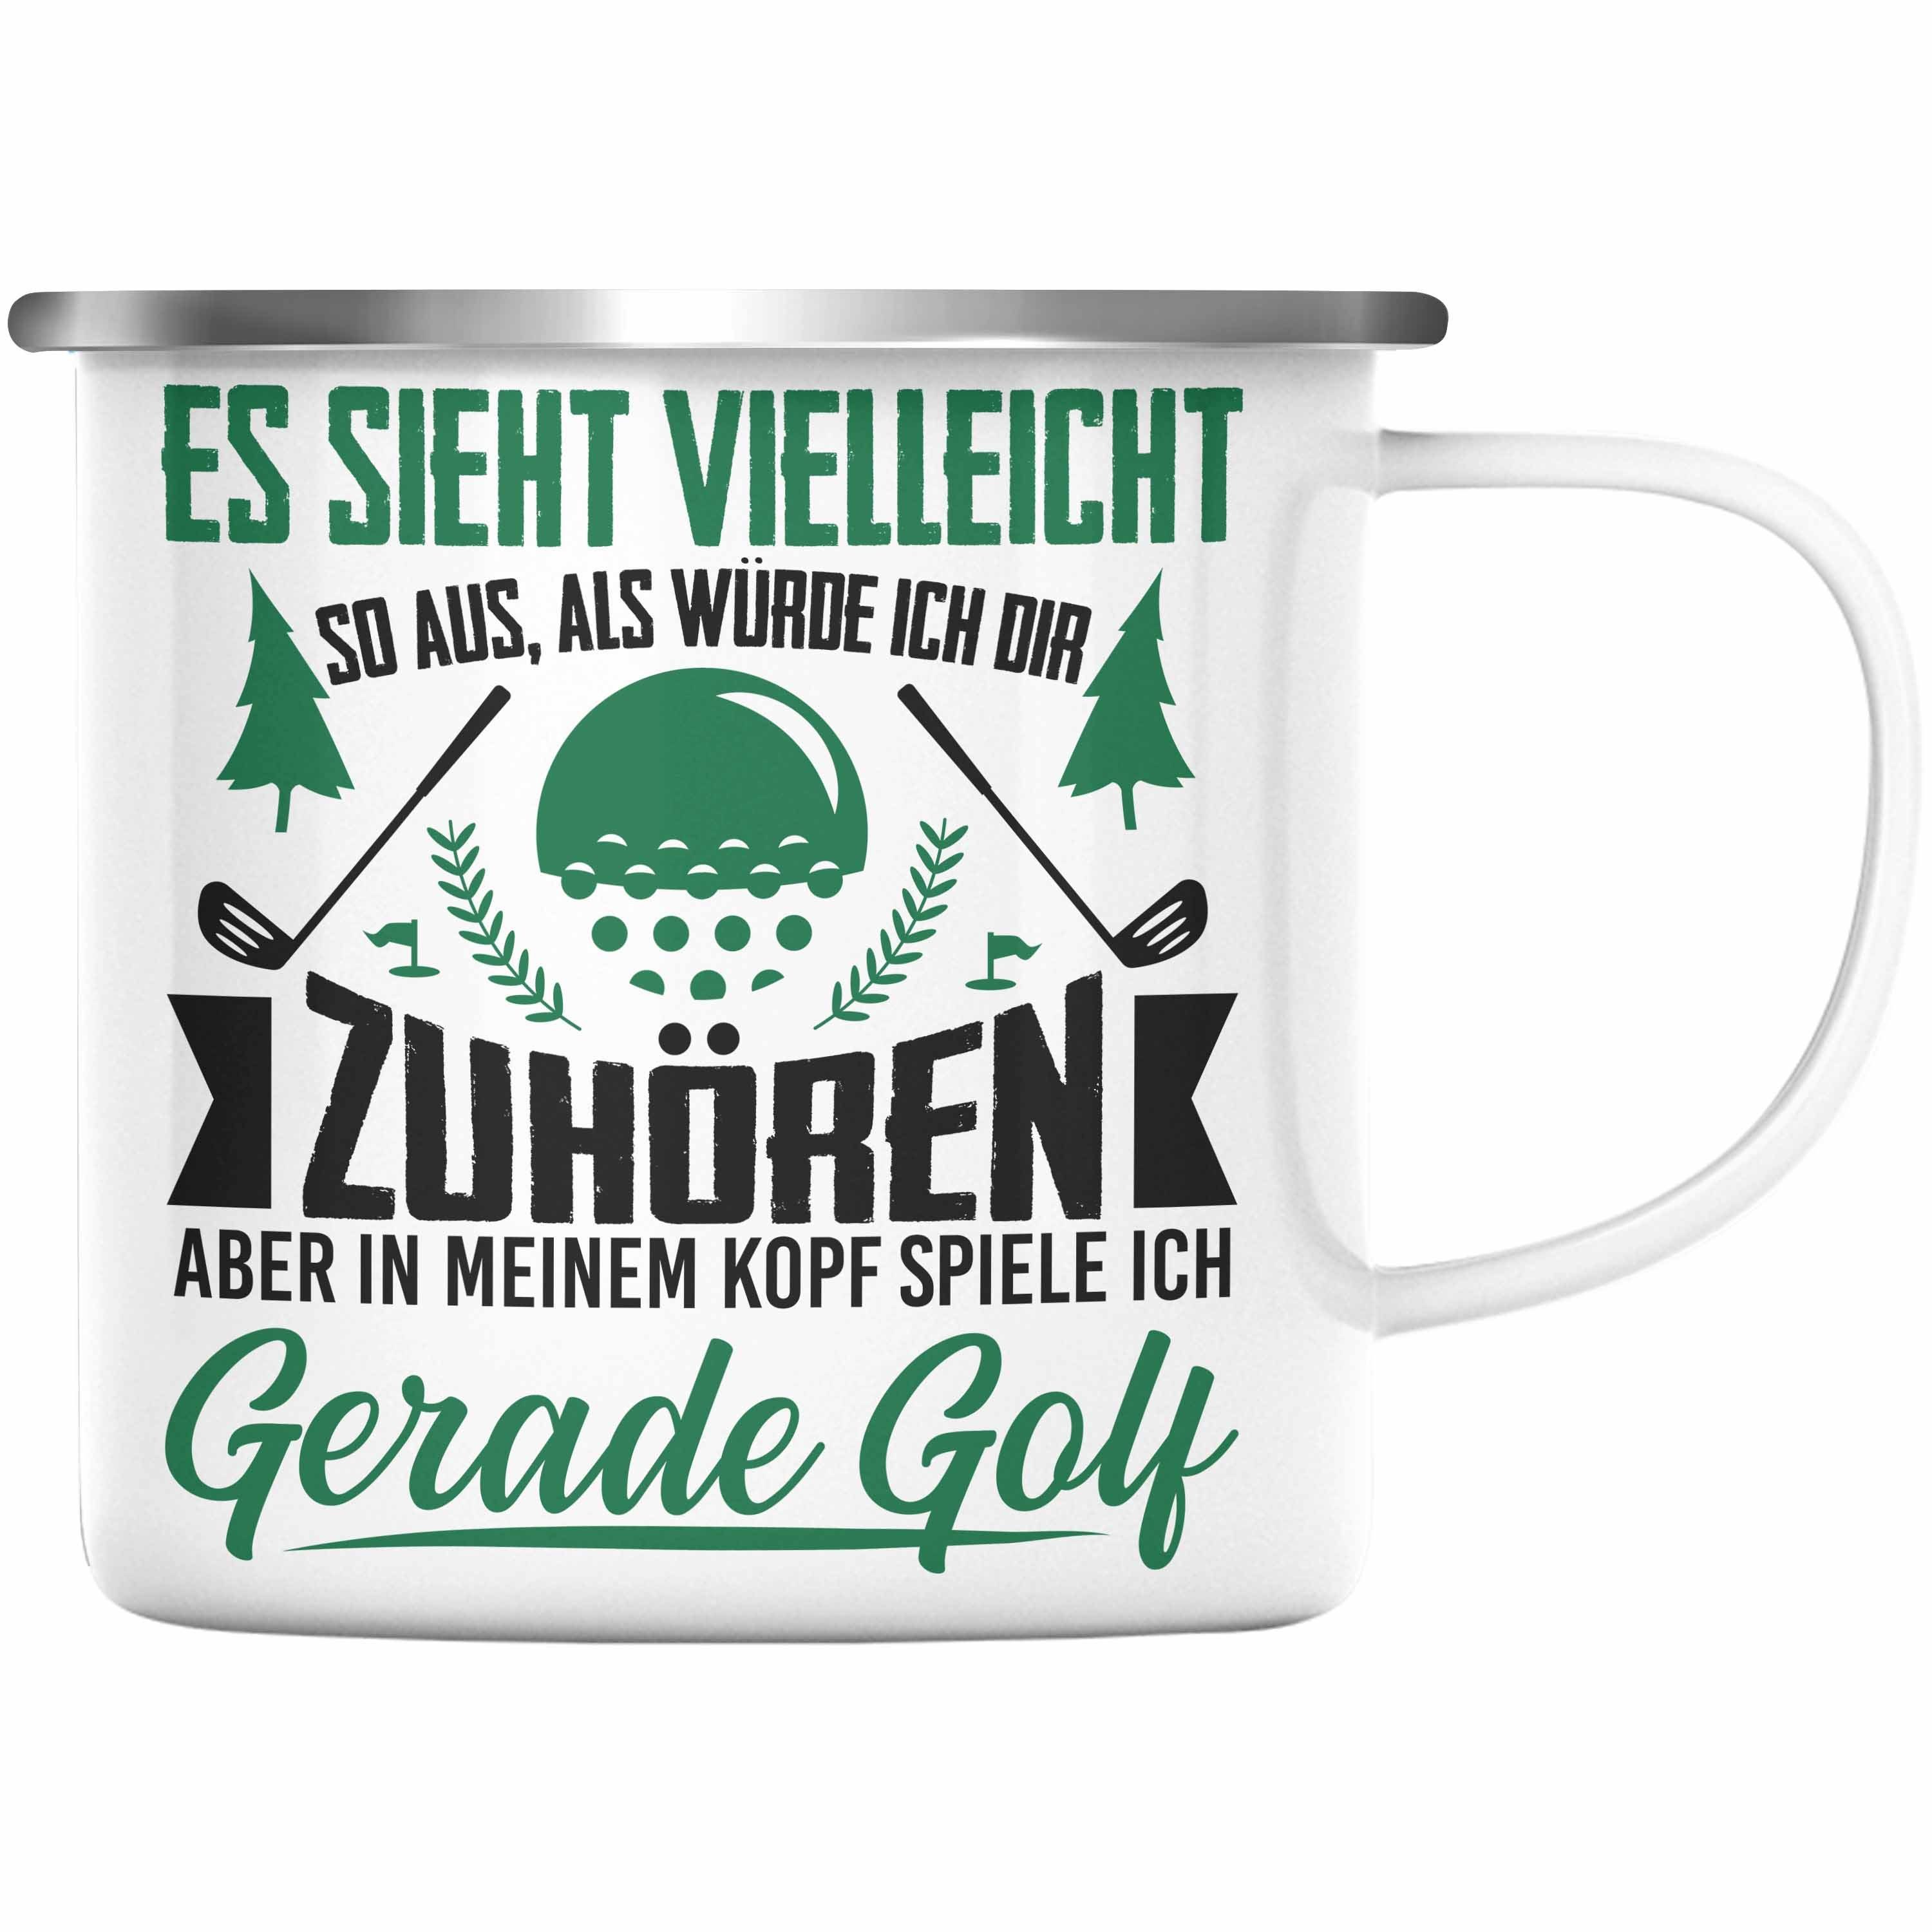 Trendation Thermotasse Trendation - Golfer Geschenk Golf Emaille Tasse mit Spruch - KaffeeEmaille Tasse für Golfer Geschenkidee Silber